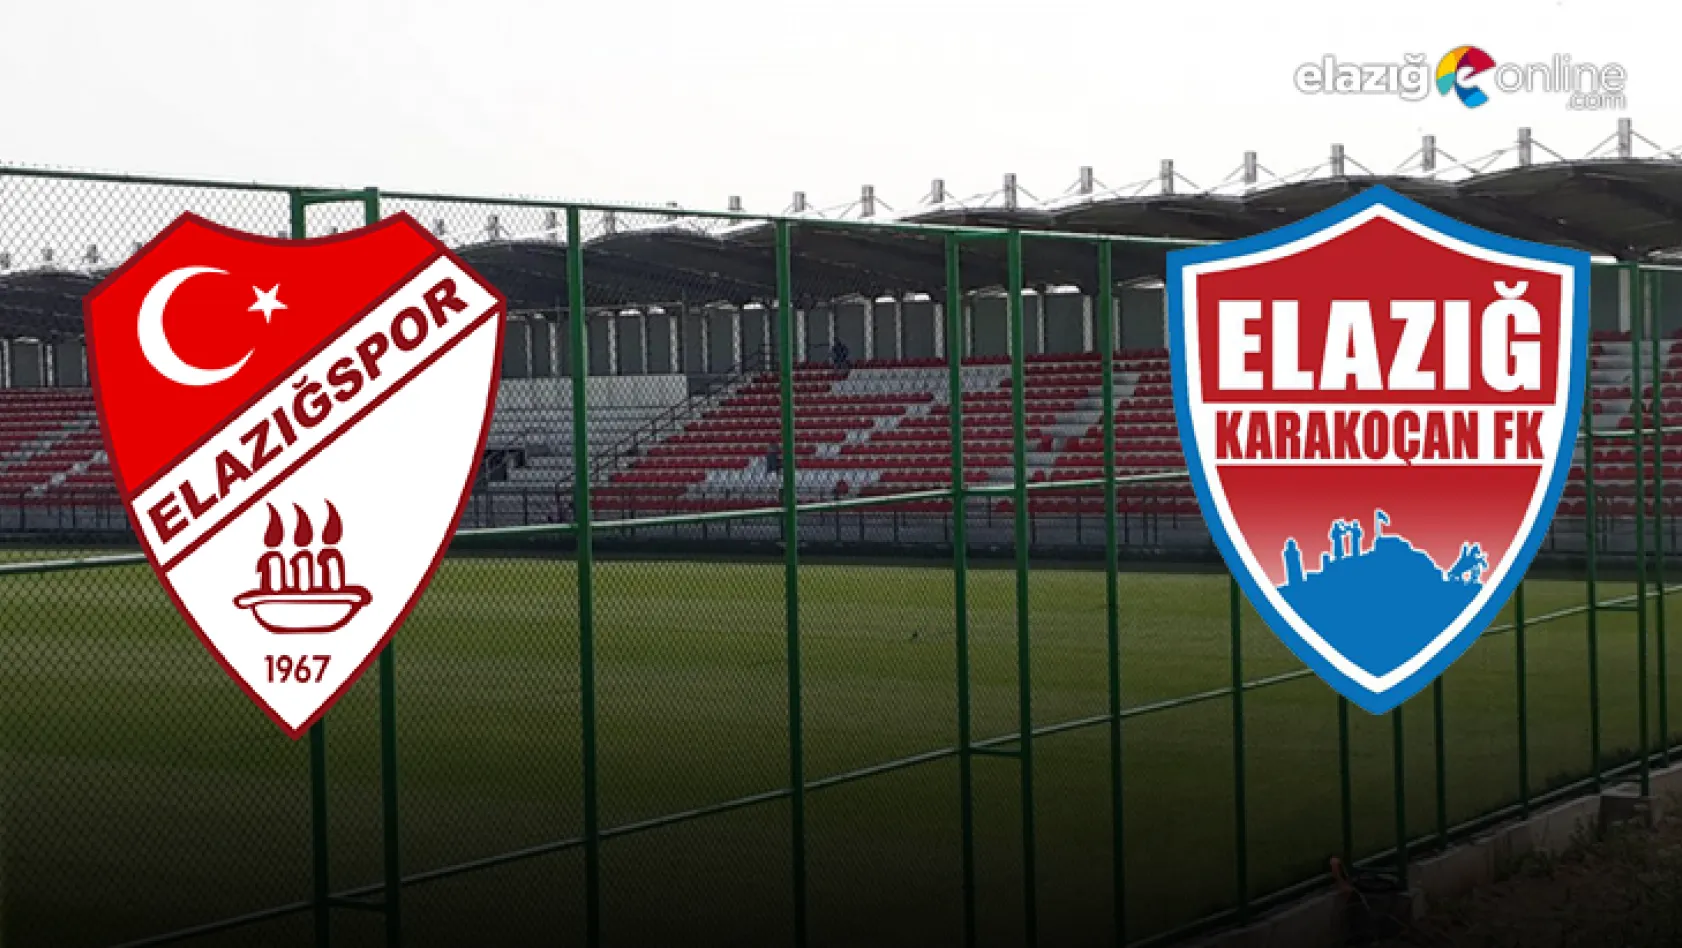 Elazığspor ve Elazığ Karakoçan FK hazırlık maçı yapacak